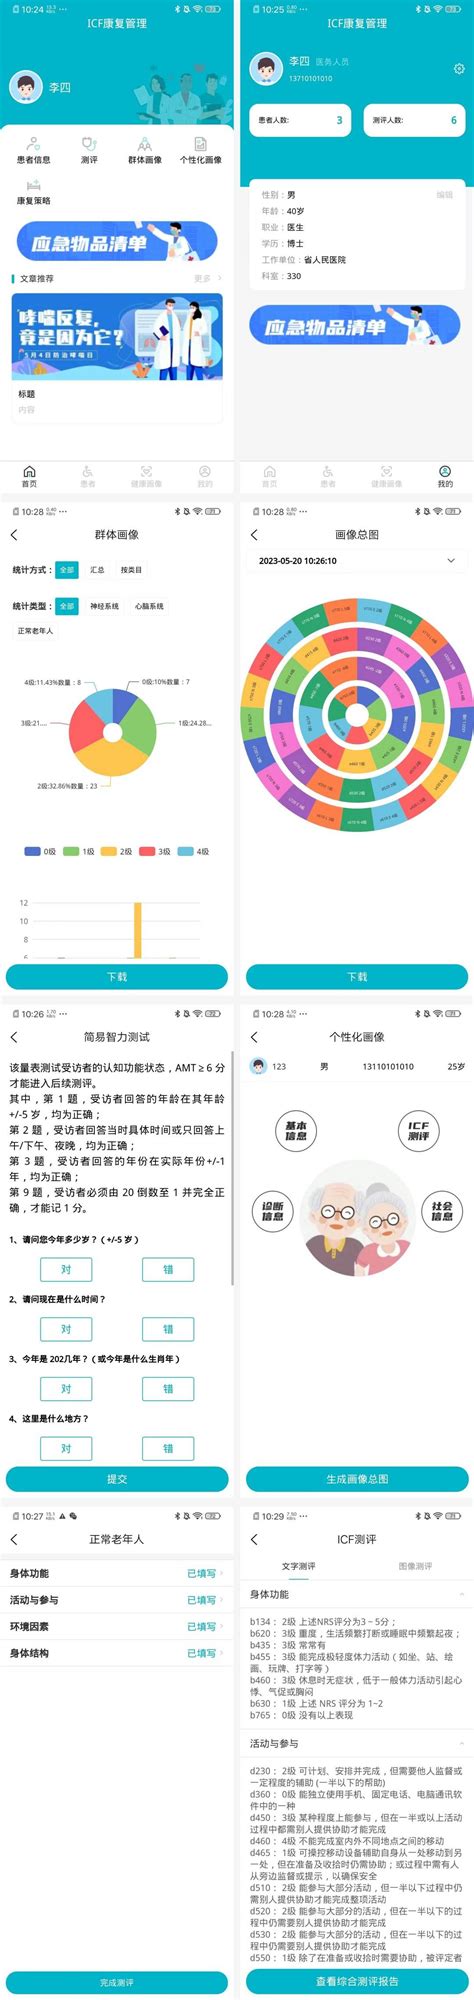 医疗健康类APP开发案例 - 广州红匣子信息技术有限公司